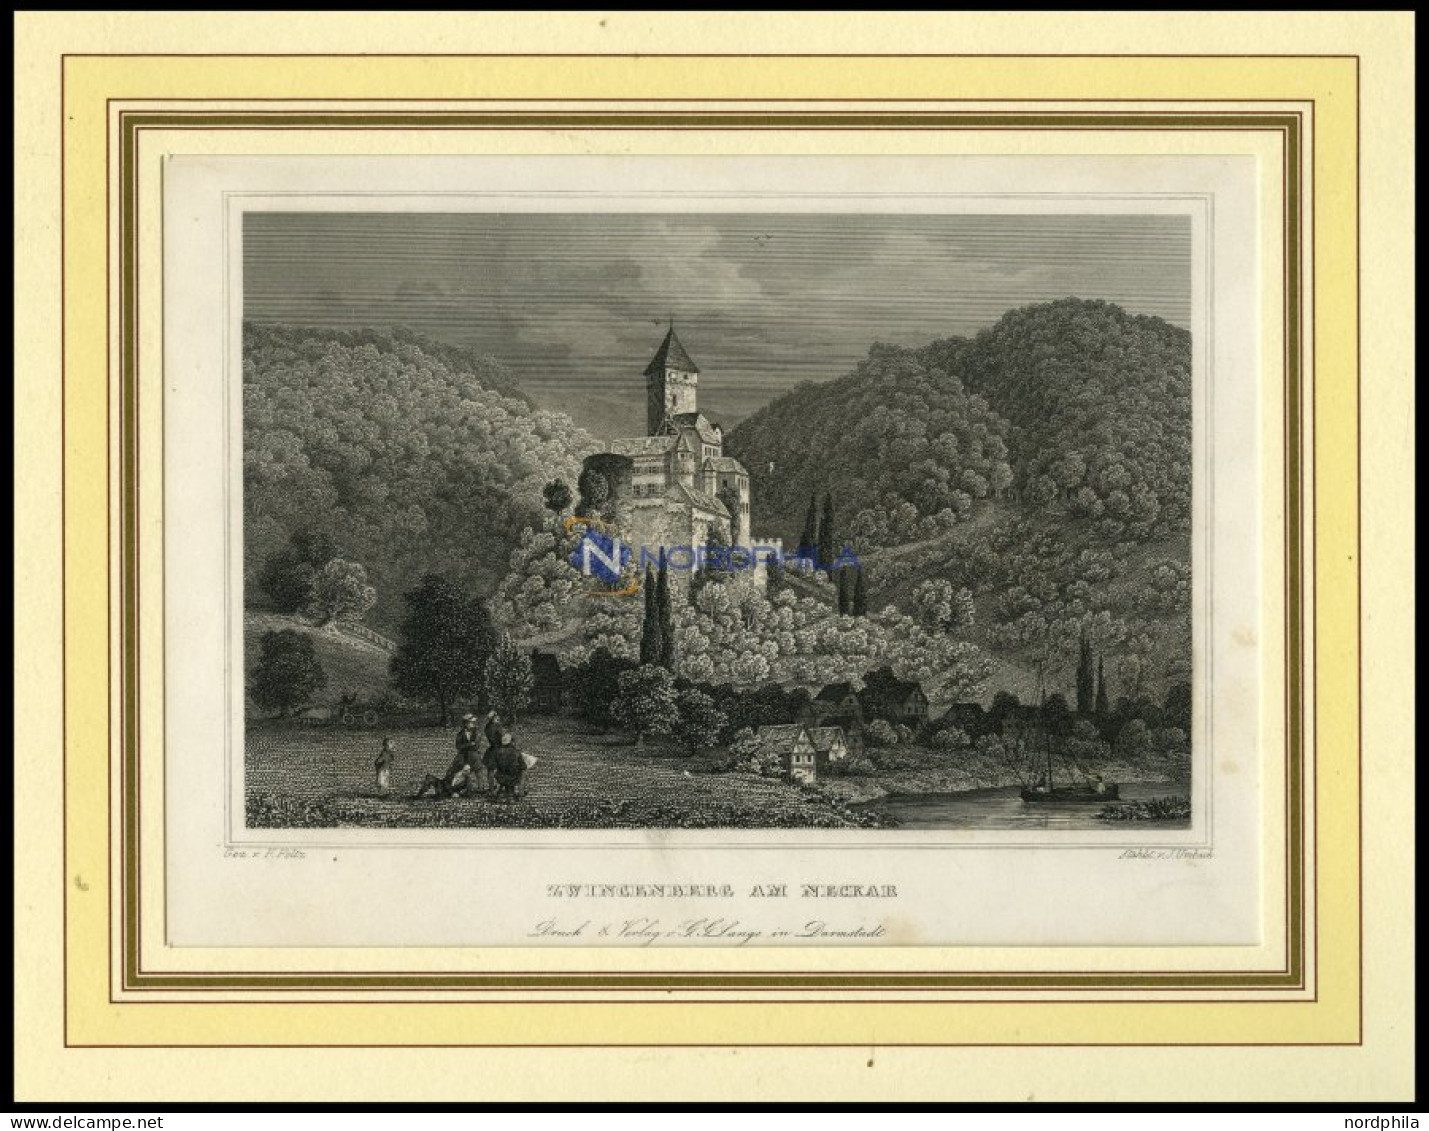 ZWINGENBERG AM NECKAR, Gesamtansicht, Stahlstich Von Foltz/Umbach Um 1840 - Estampes & Gravures